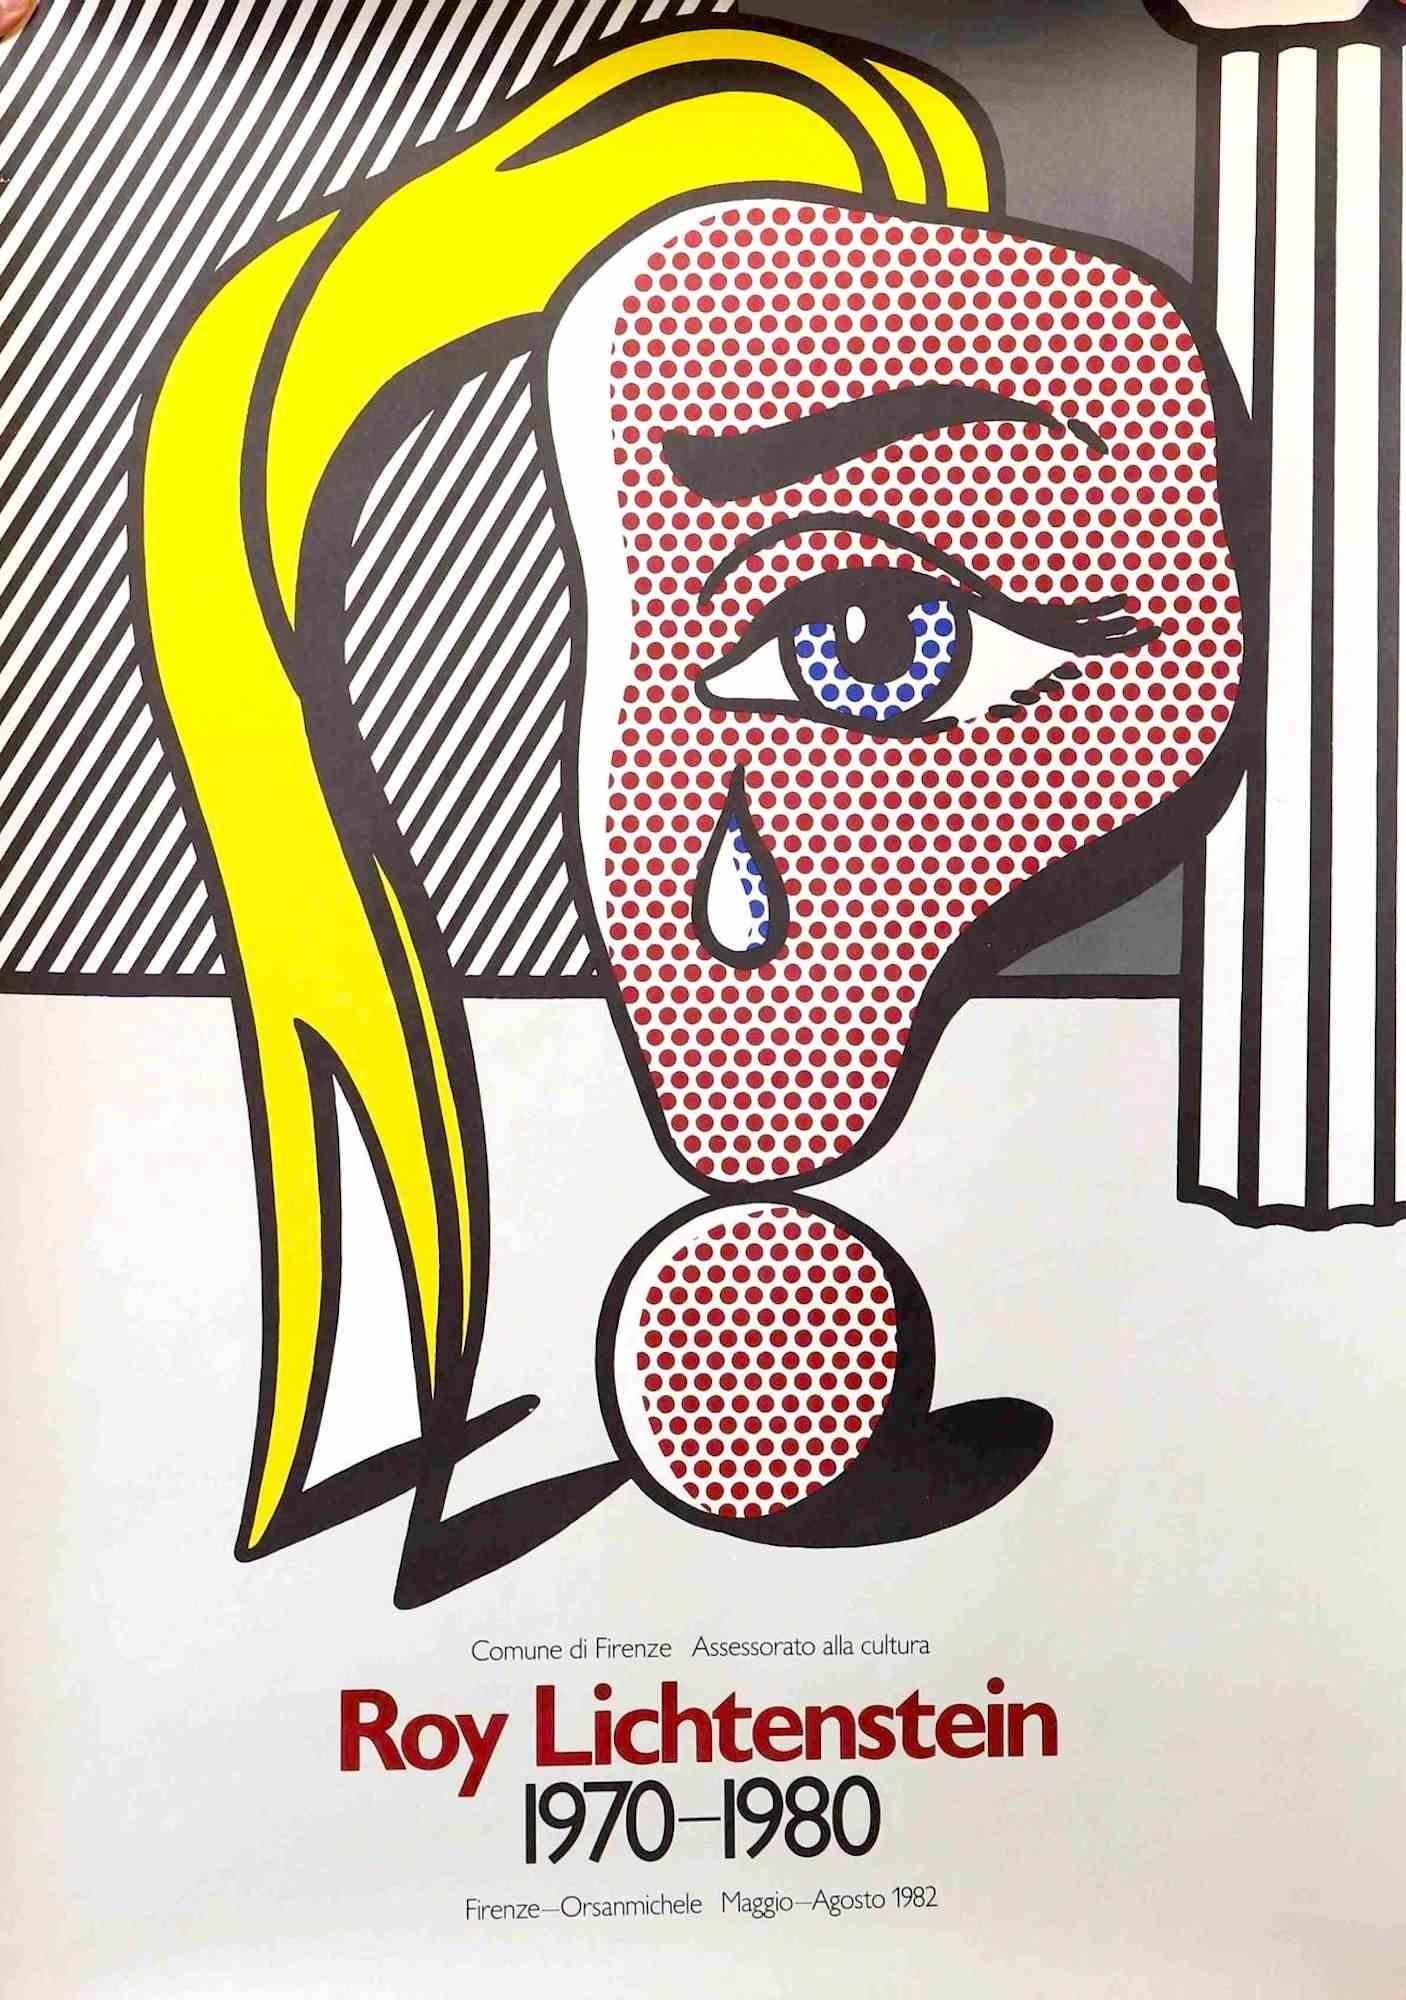 Vintage Poster Exhibition in Florence est une œuvre d'art très colorée réalisée par Roy Lichtenstein en 1982.

Offset de couleurs mixtes sur papier.

Cette belle estampe a été réalisée à l'occasion de l'exposition qui s'est tenue à Orsanmichele à